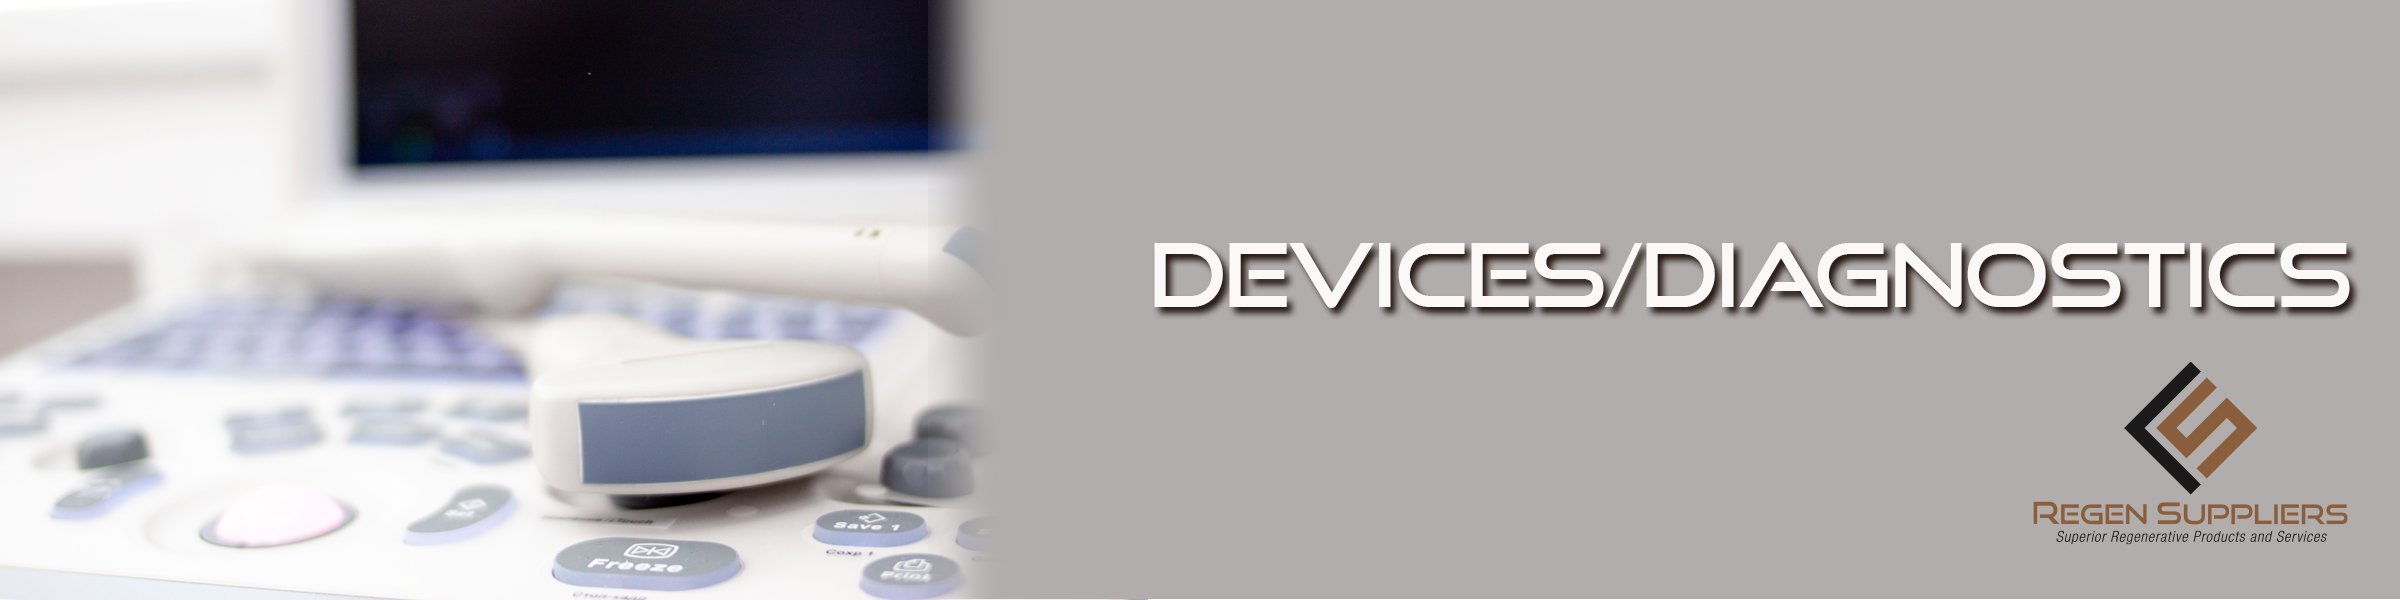 Devices/Diagnostics